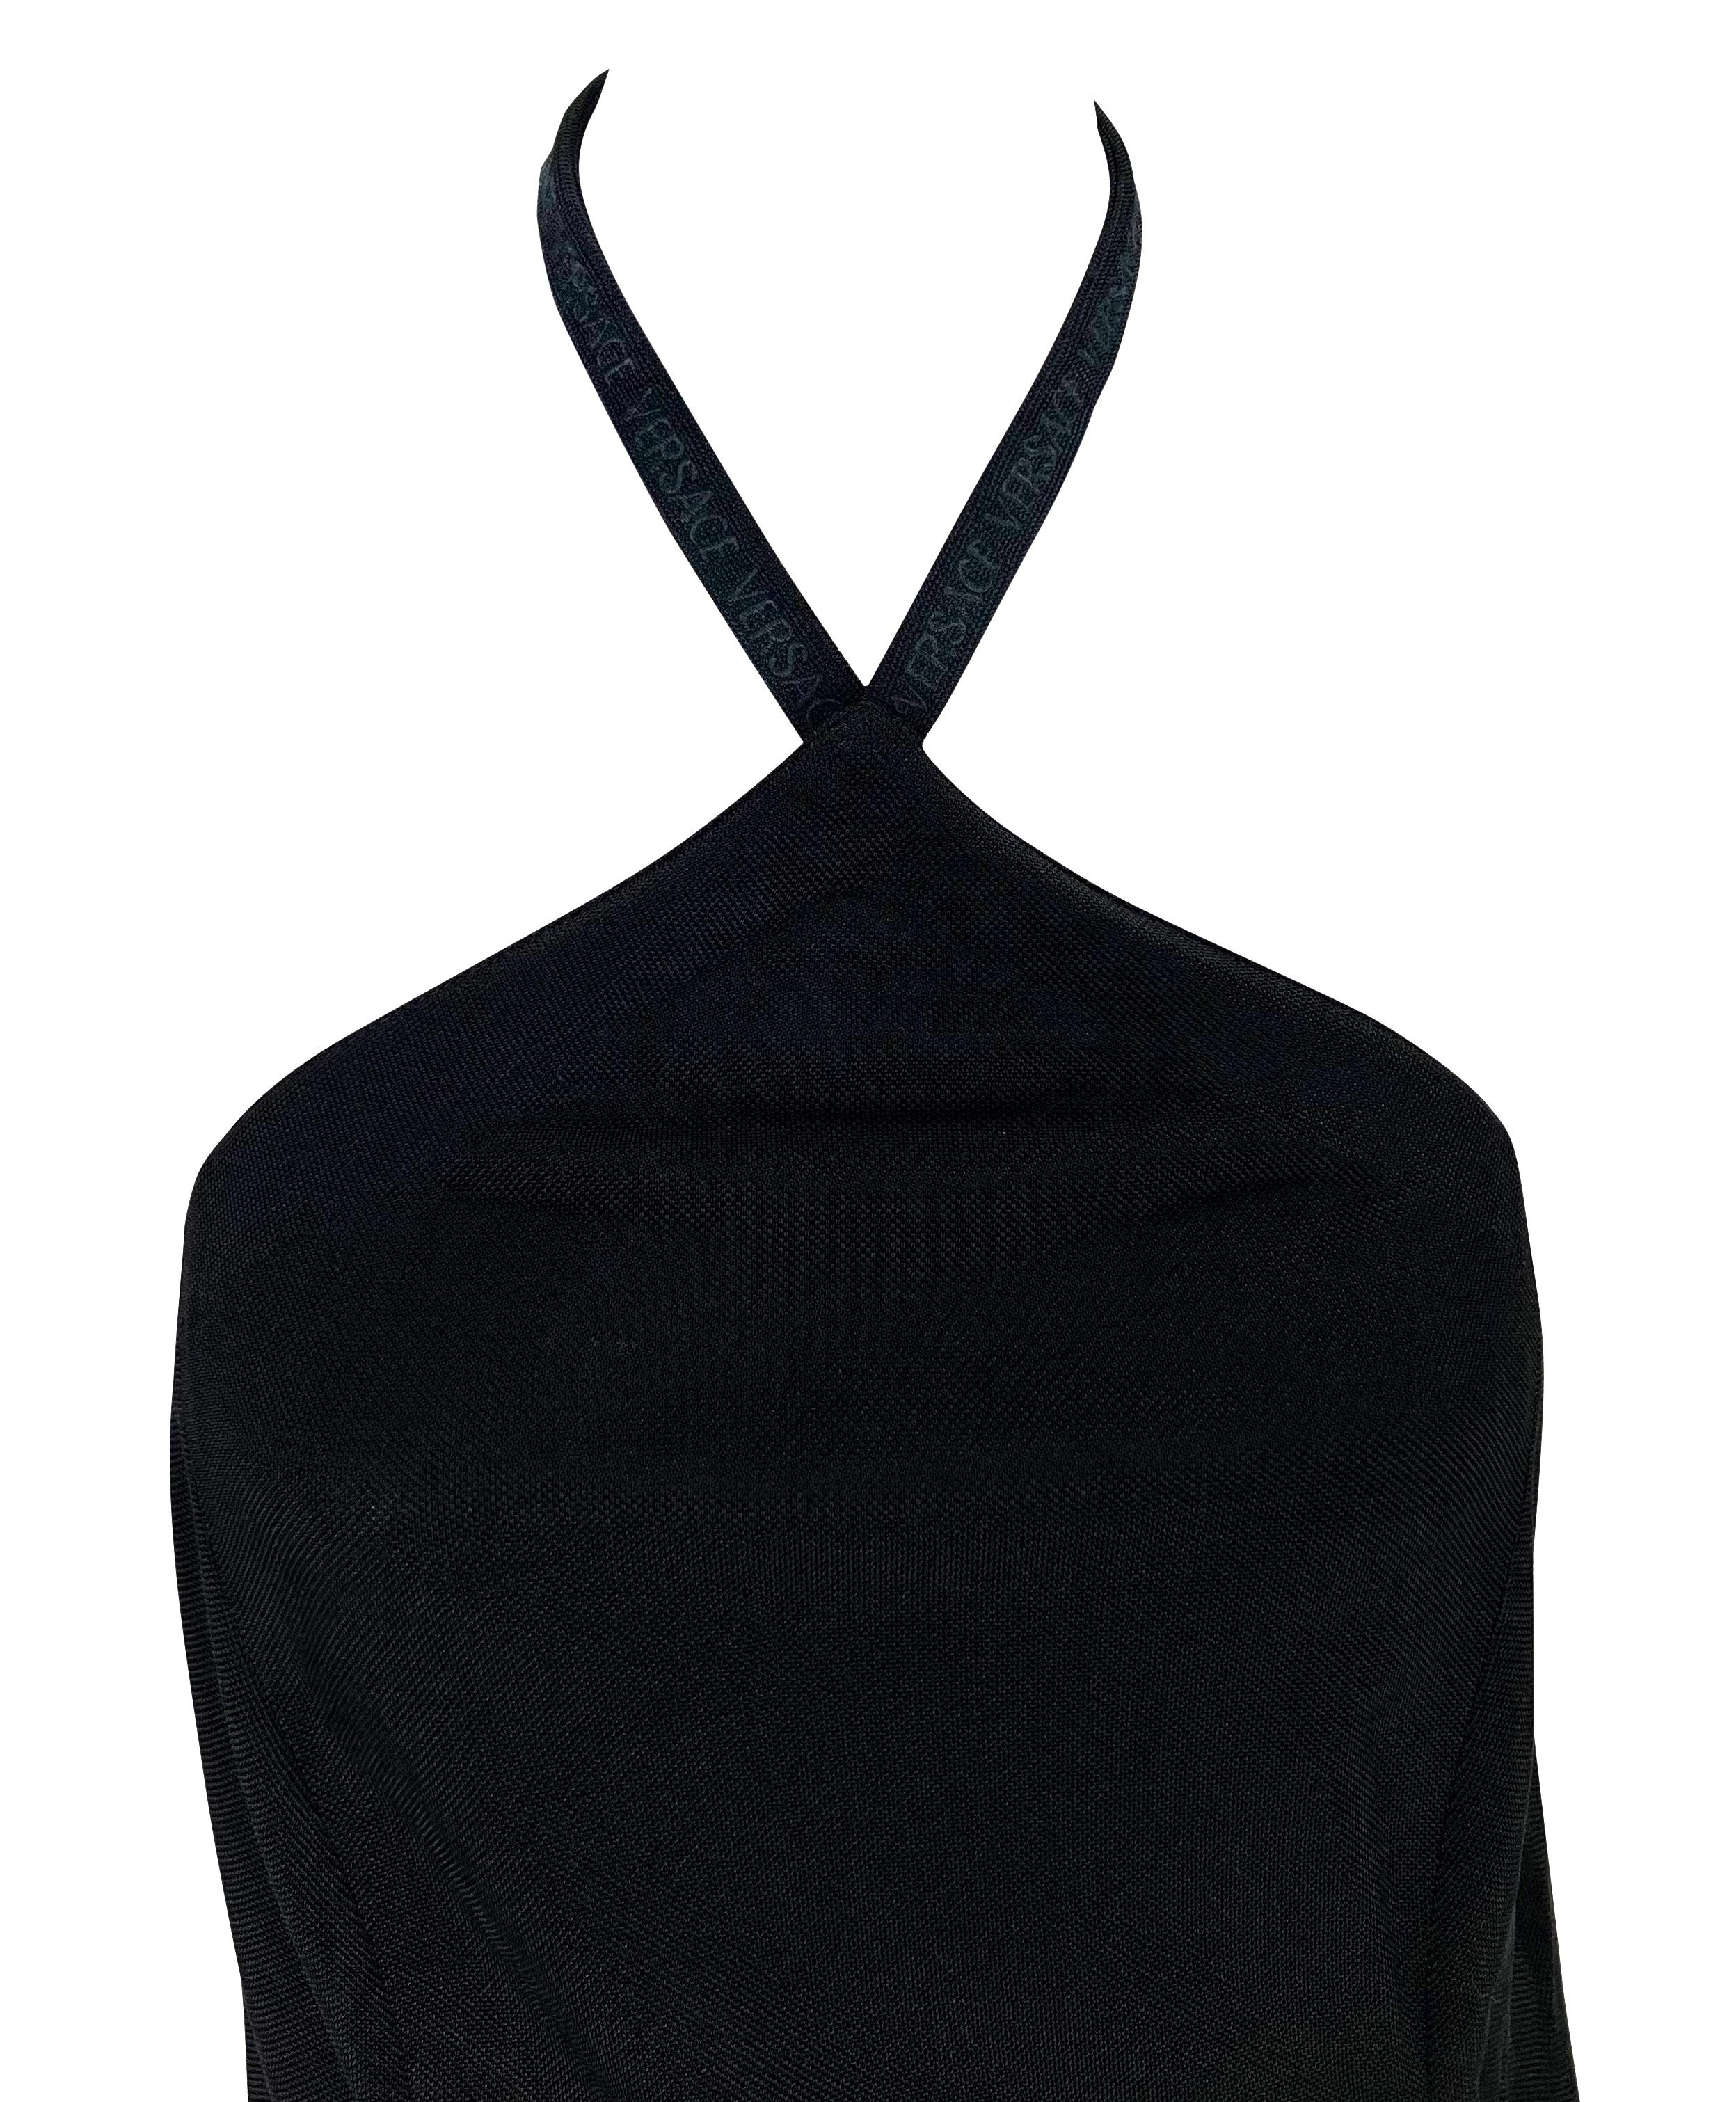 Nous vous présentons une magnifique robe Gianni Versace en maille noire à dos nu, dessinée par Donatella Versace. Datant de la fin des années 1990, cette robe tube en maille noire est suspendue à la nuque. La robe est complétée par l'inscription 